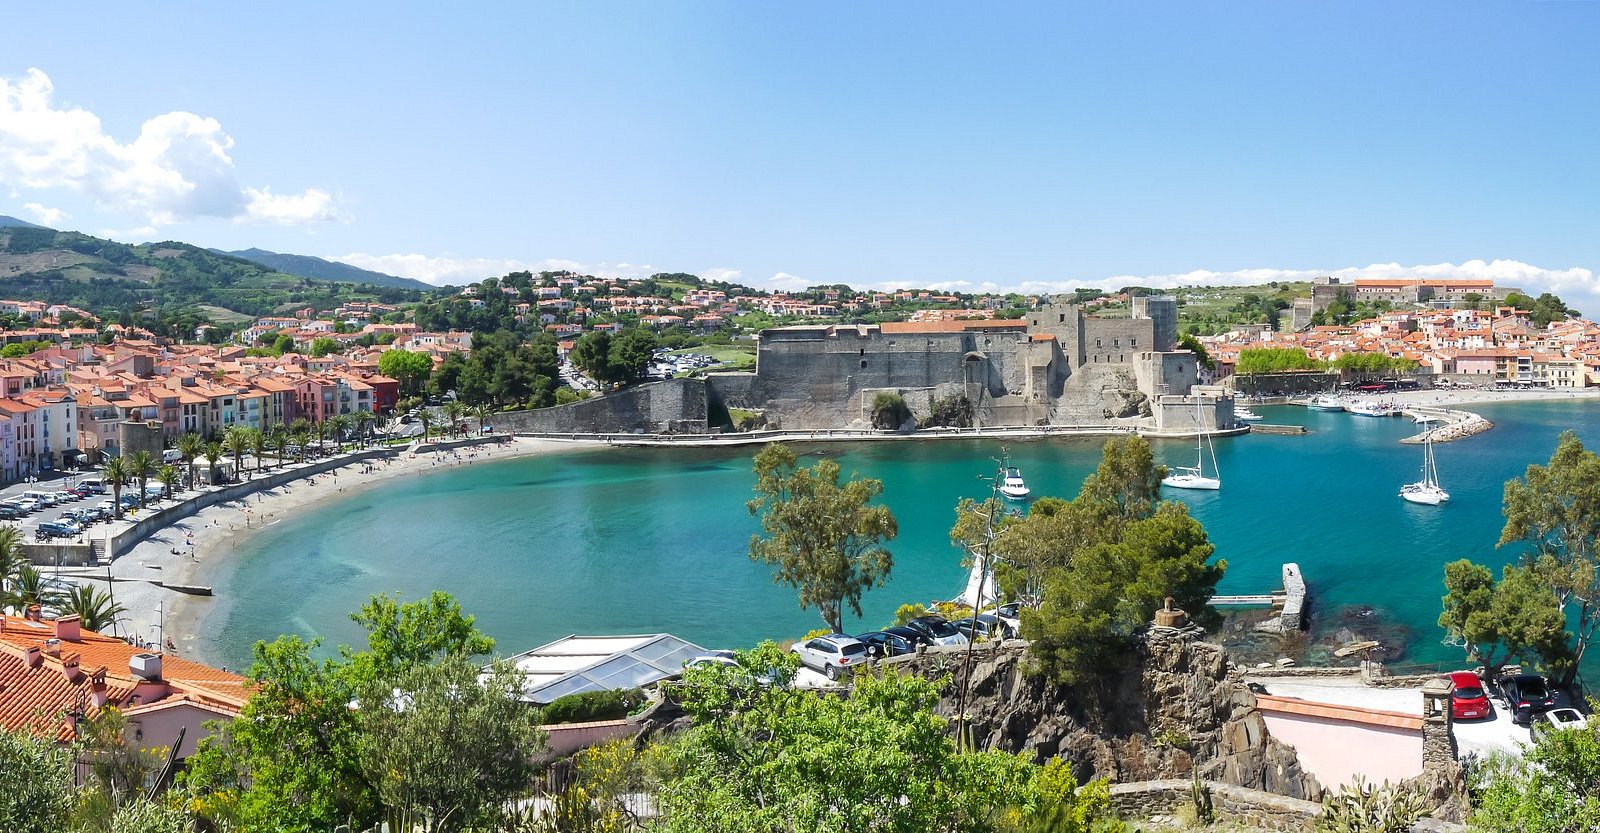 10 Beste Hotels met een receptiezaal in Perpignan 2023 - Tripadvisor